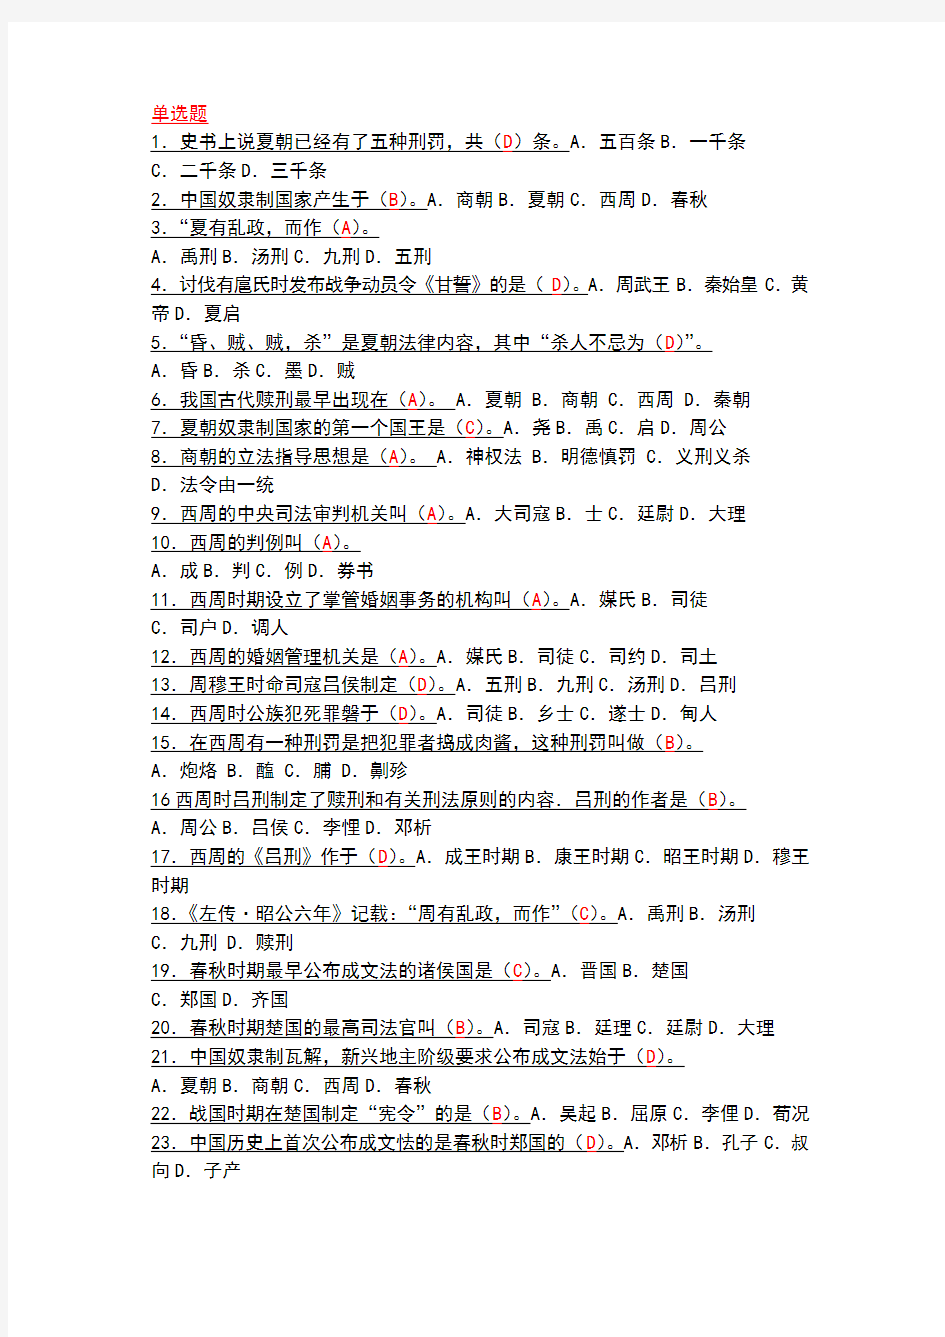 中国法制史最全的单选题